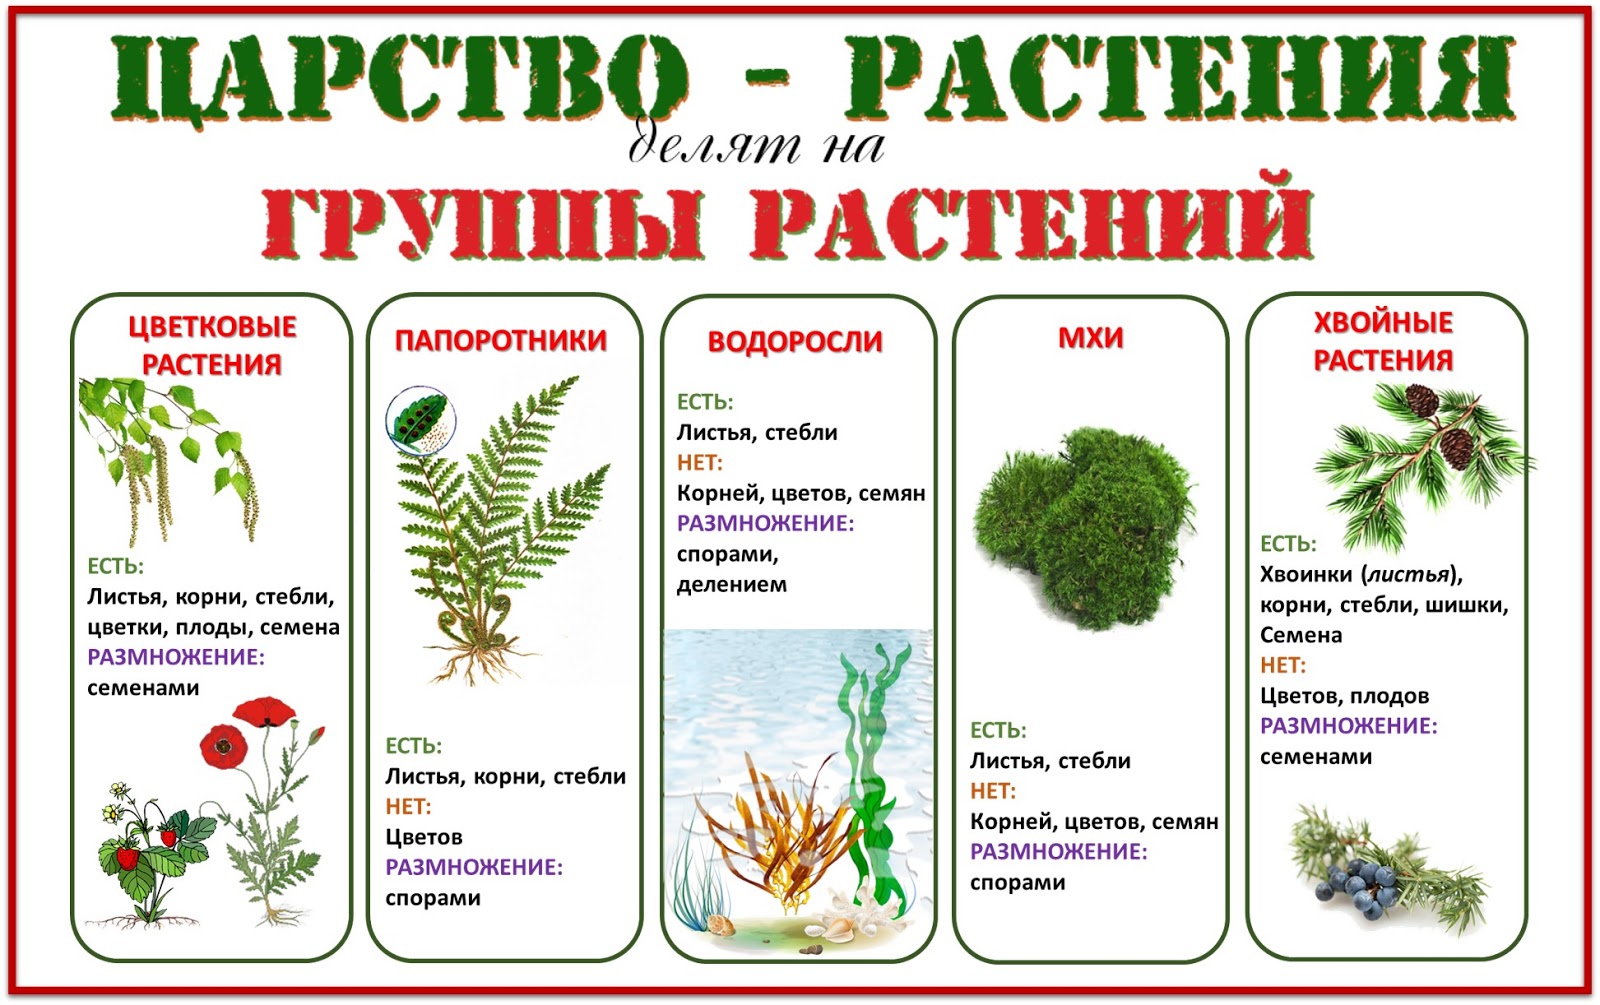 Группа растений которых является. Группы растений. Деление растений на группы. Царство растений. Группы царства растений.